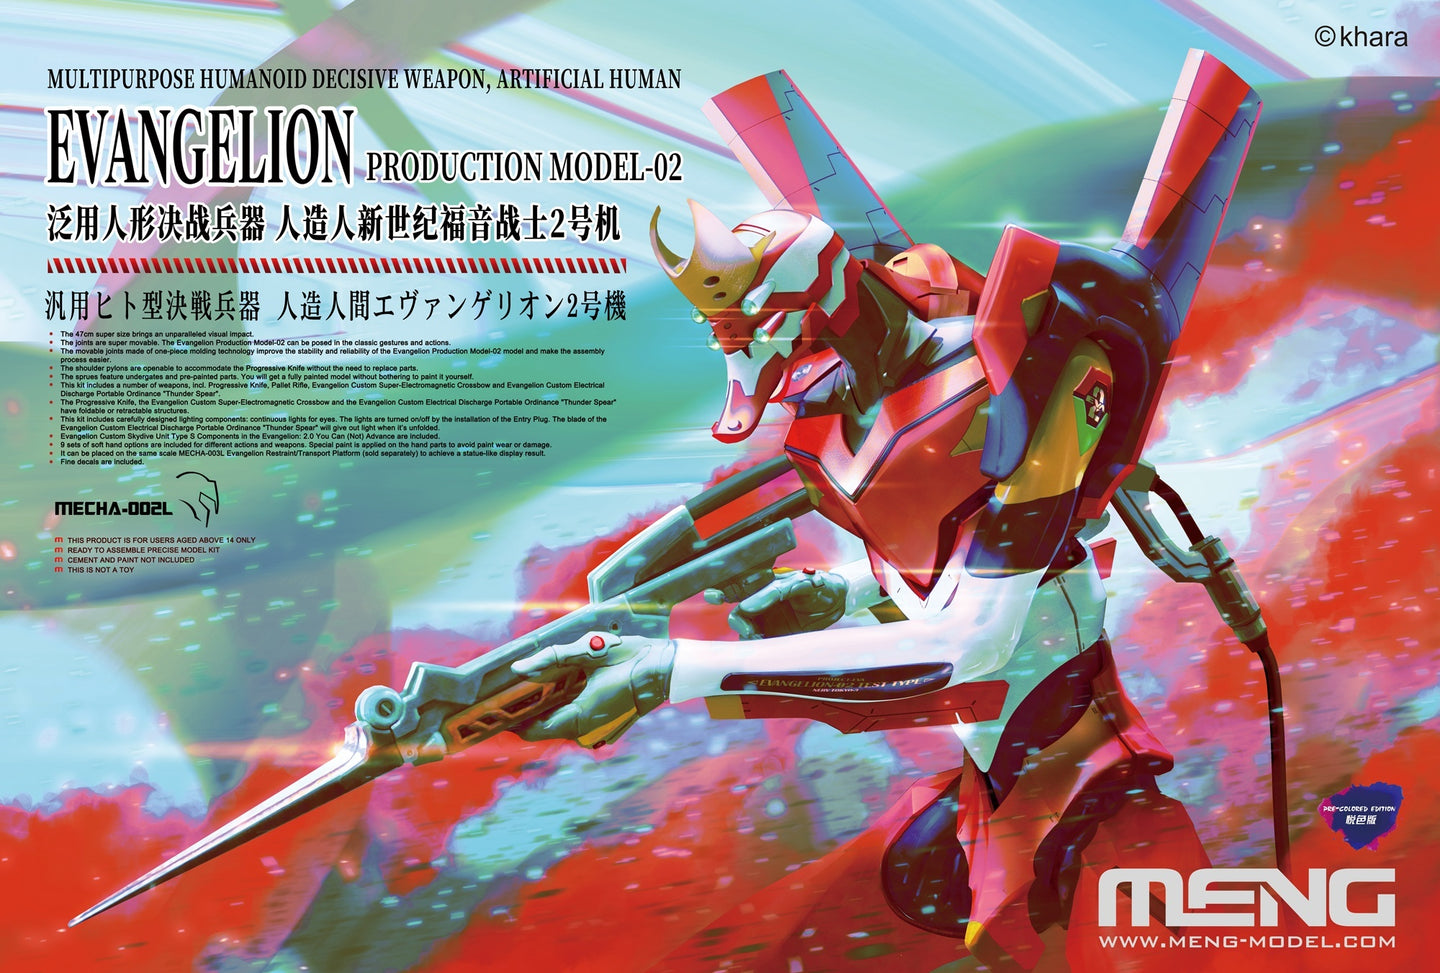 Meng Evangelion Production Model-02 (Pre-Colored Edition) Mecha-002L